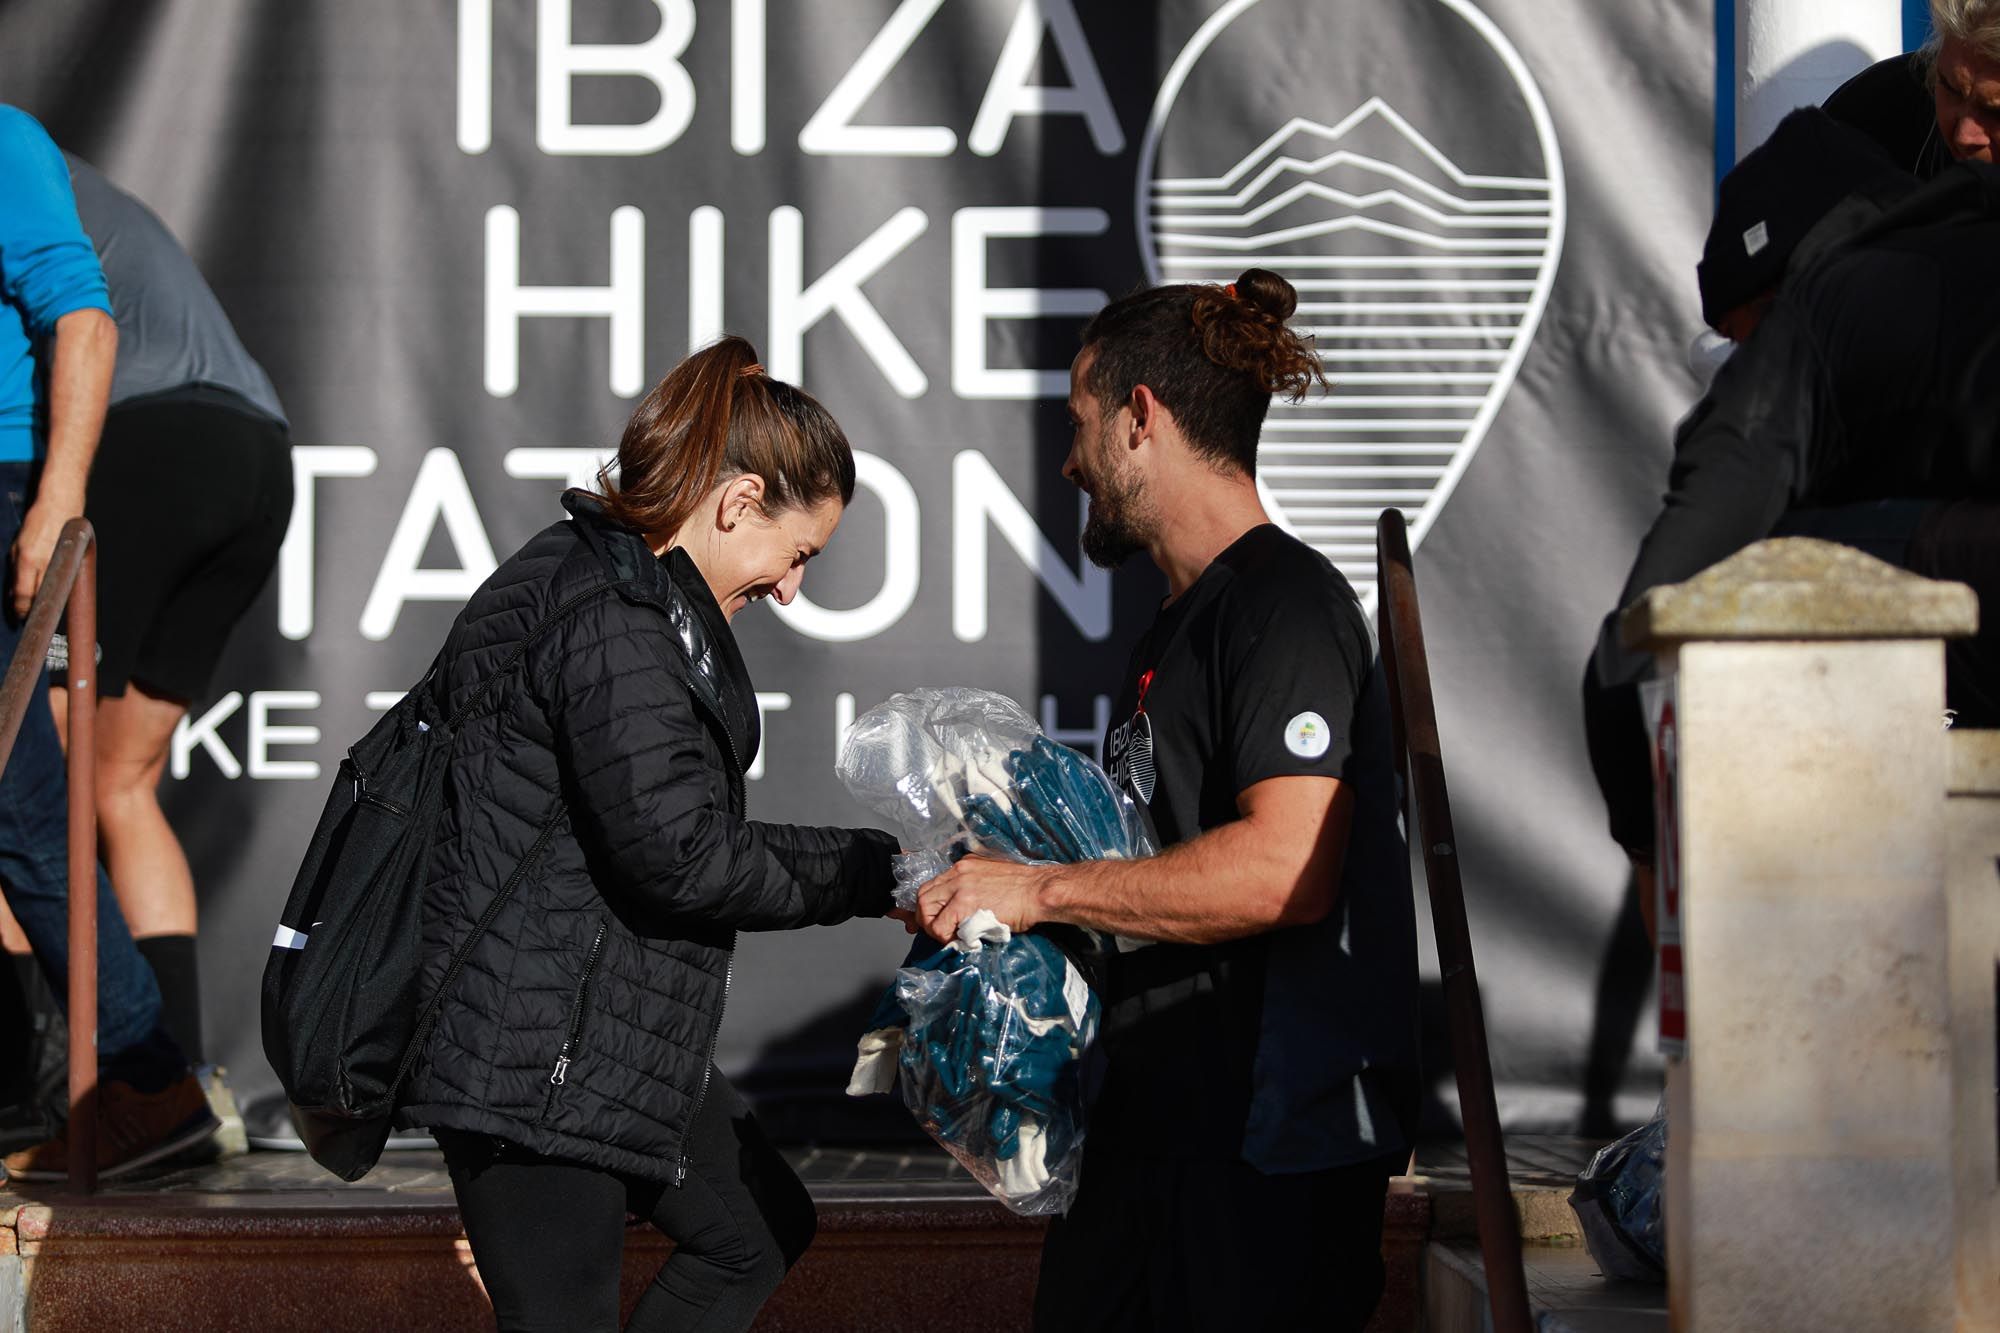 Ibiza Hikes Station celebra una caminata y limpieza de monte a favor de IFCC